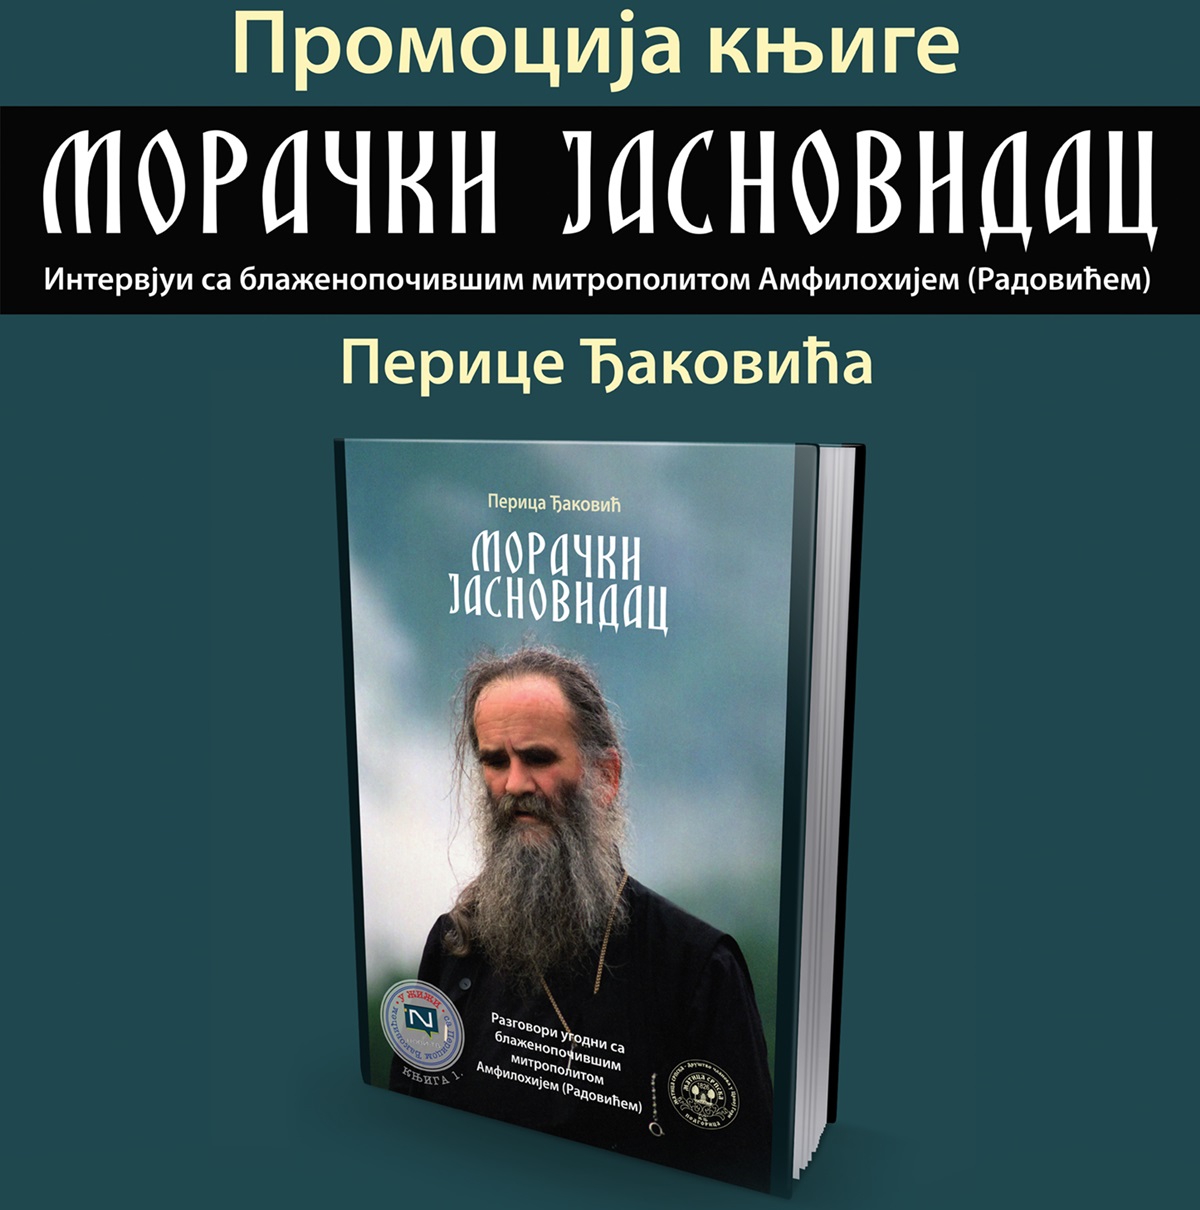 КЦ: Представљање књиге о митрополиту Амфилохију